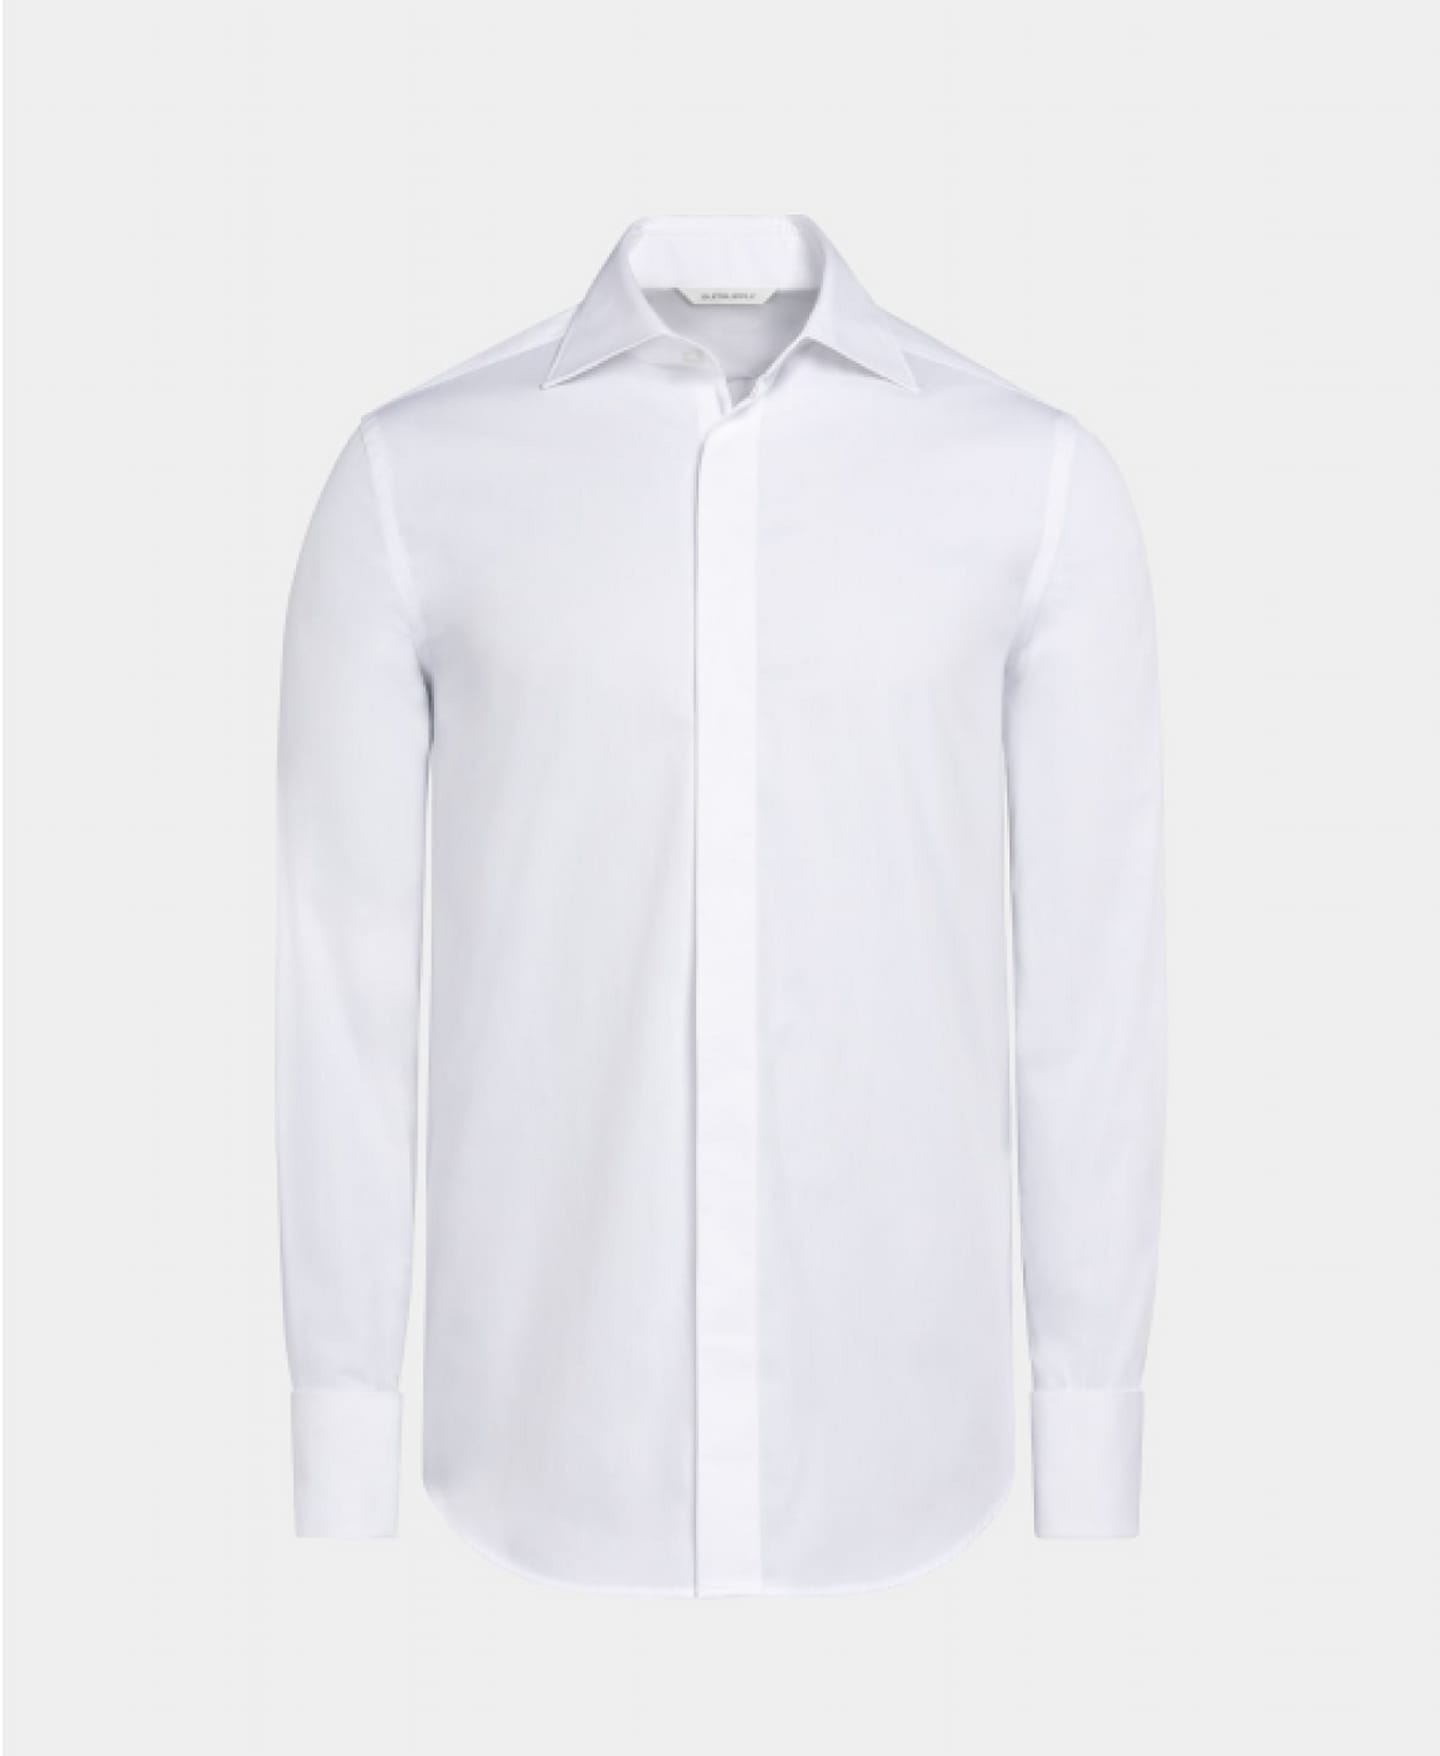 Biała koszula z krytą listwą guzikową.